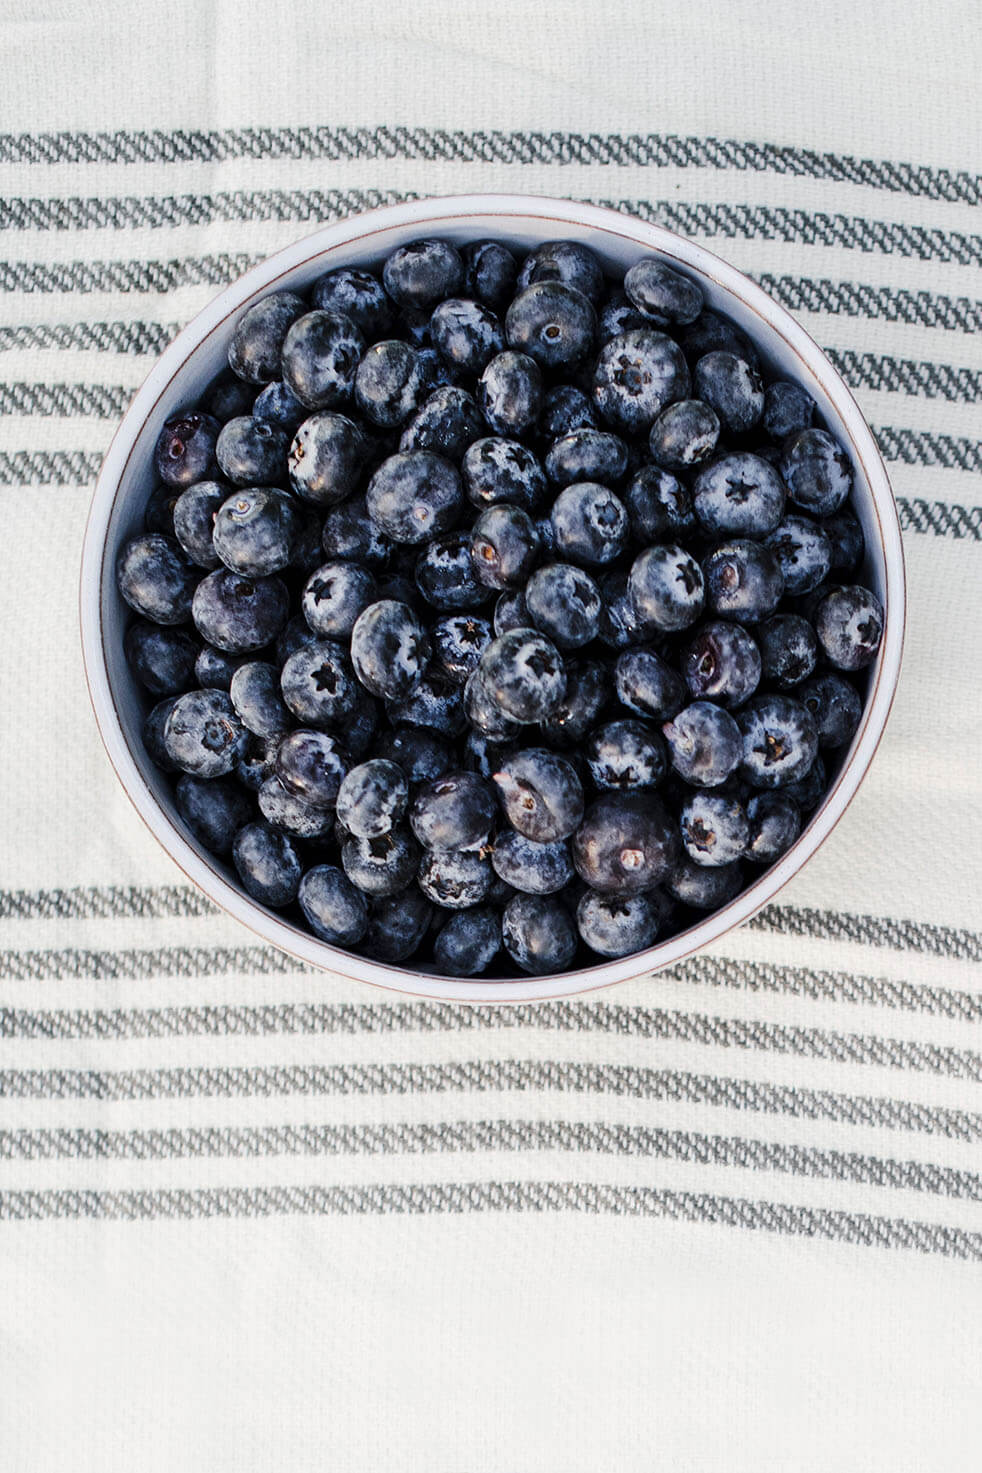 Jumbo Blueberries (16 oz.)